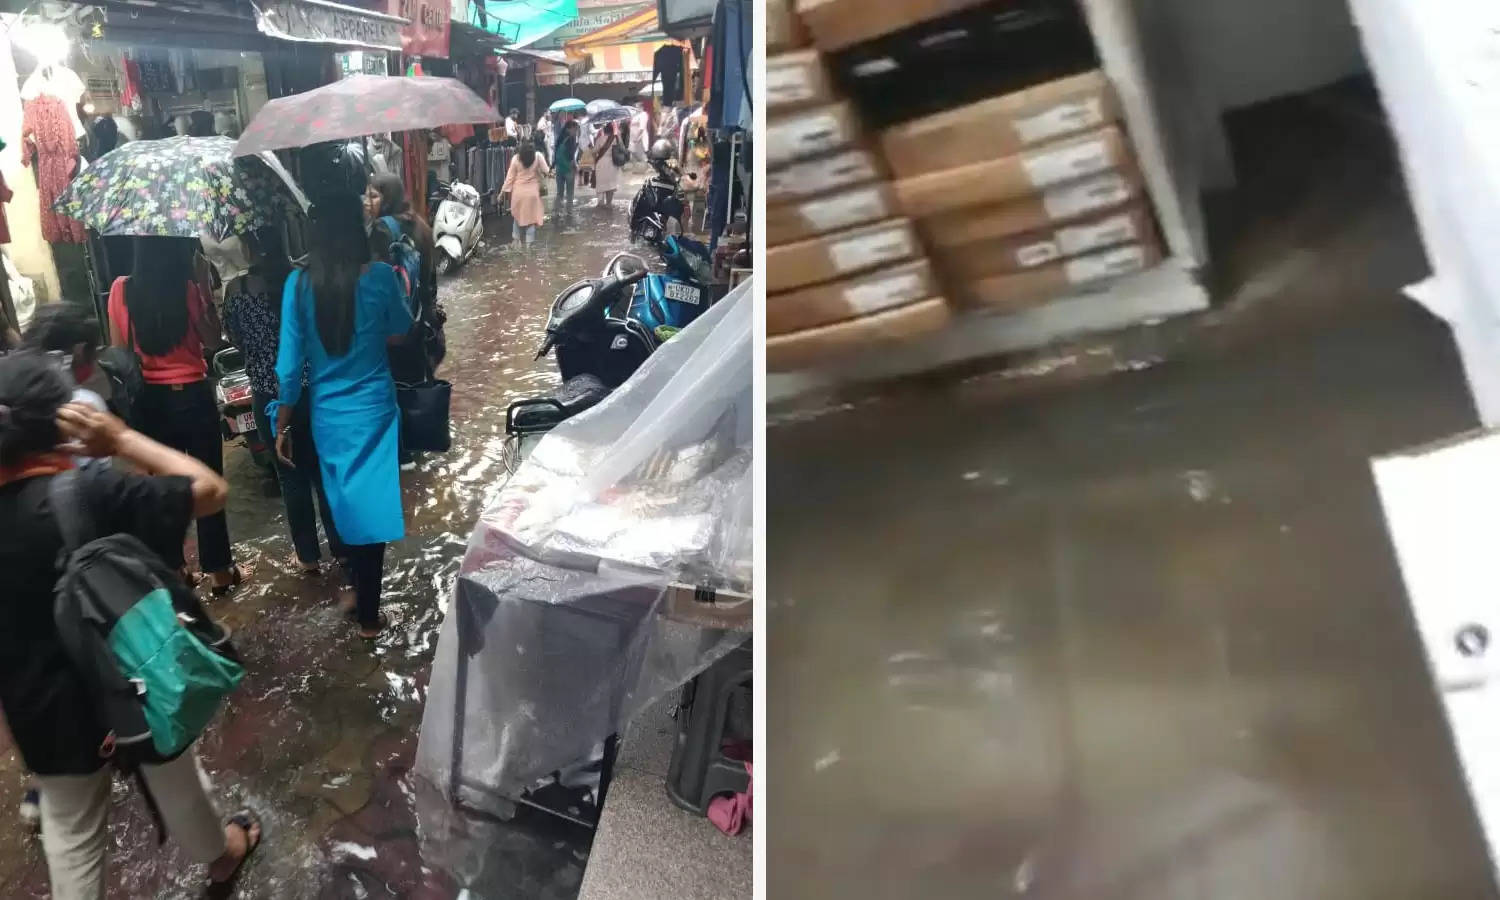 Smart City : बारिश ने बनाया पल्टन बाजार की दुकानों को सहस्त्रधारा, व्यापारी परेशान; सुध बुध लेने वाला कोई नहीं